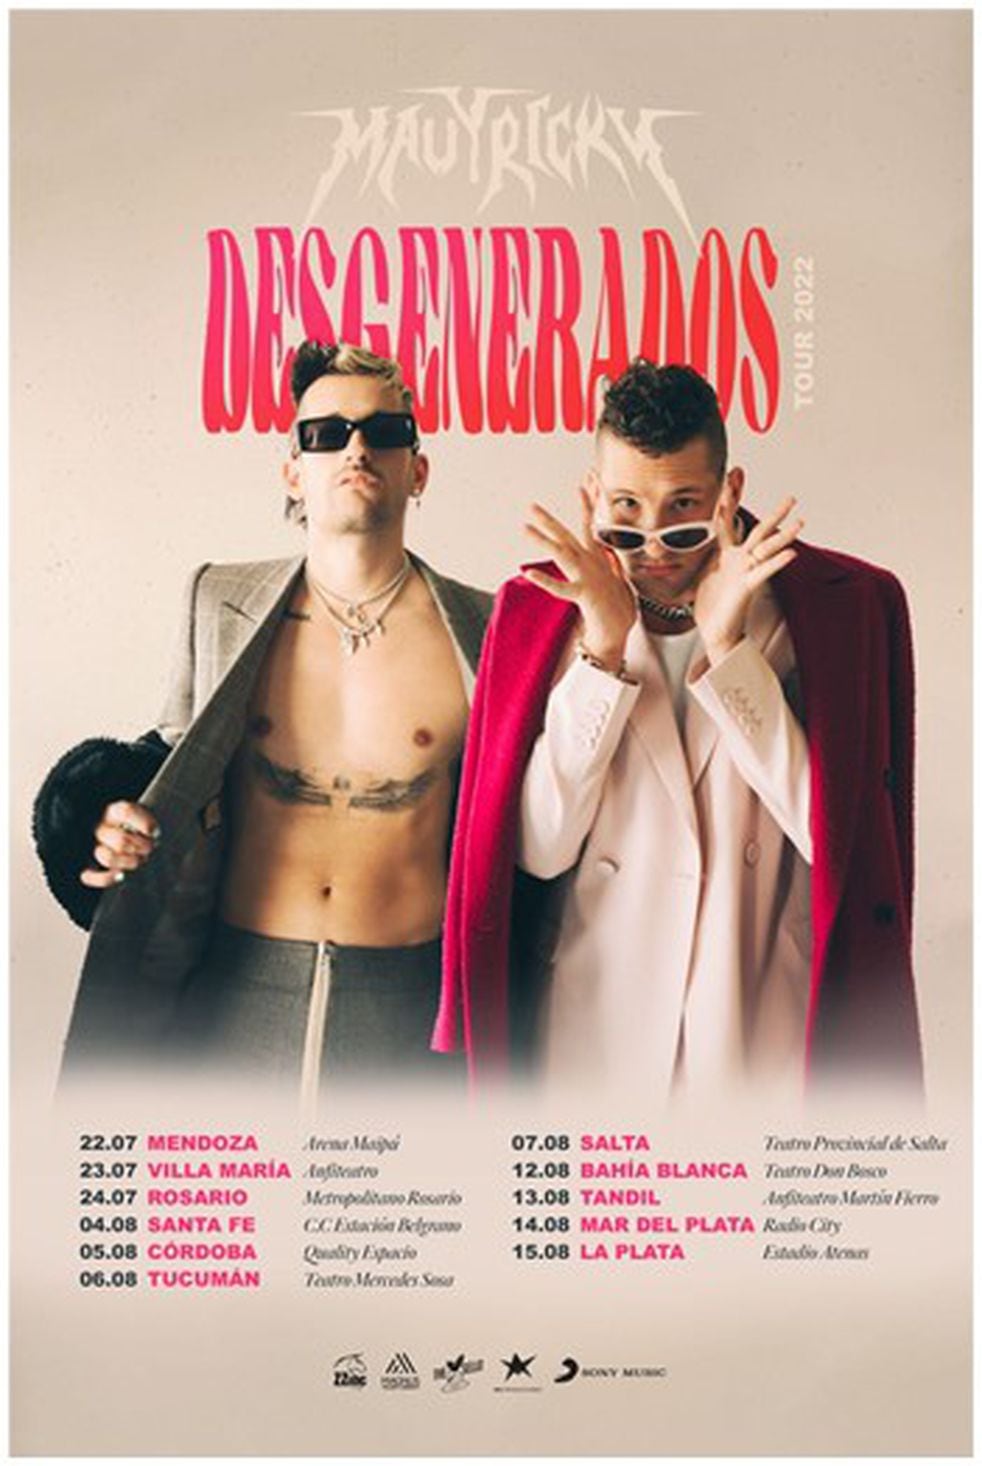 Mau y Ricky lanzan su nuevo tour “Desgenerados” en la Argentina.